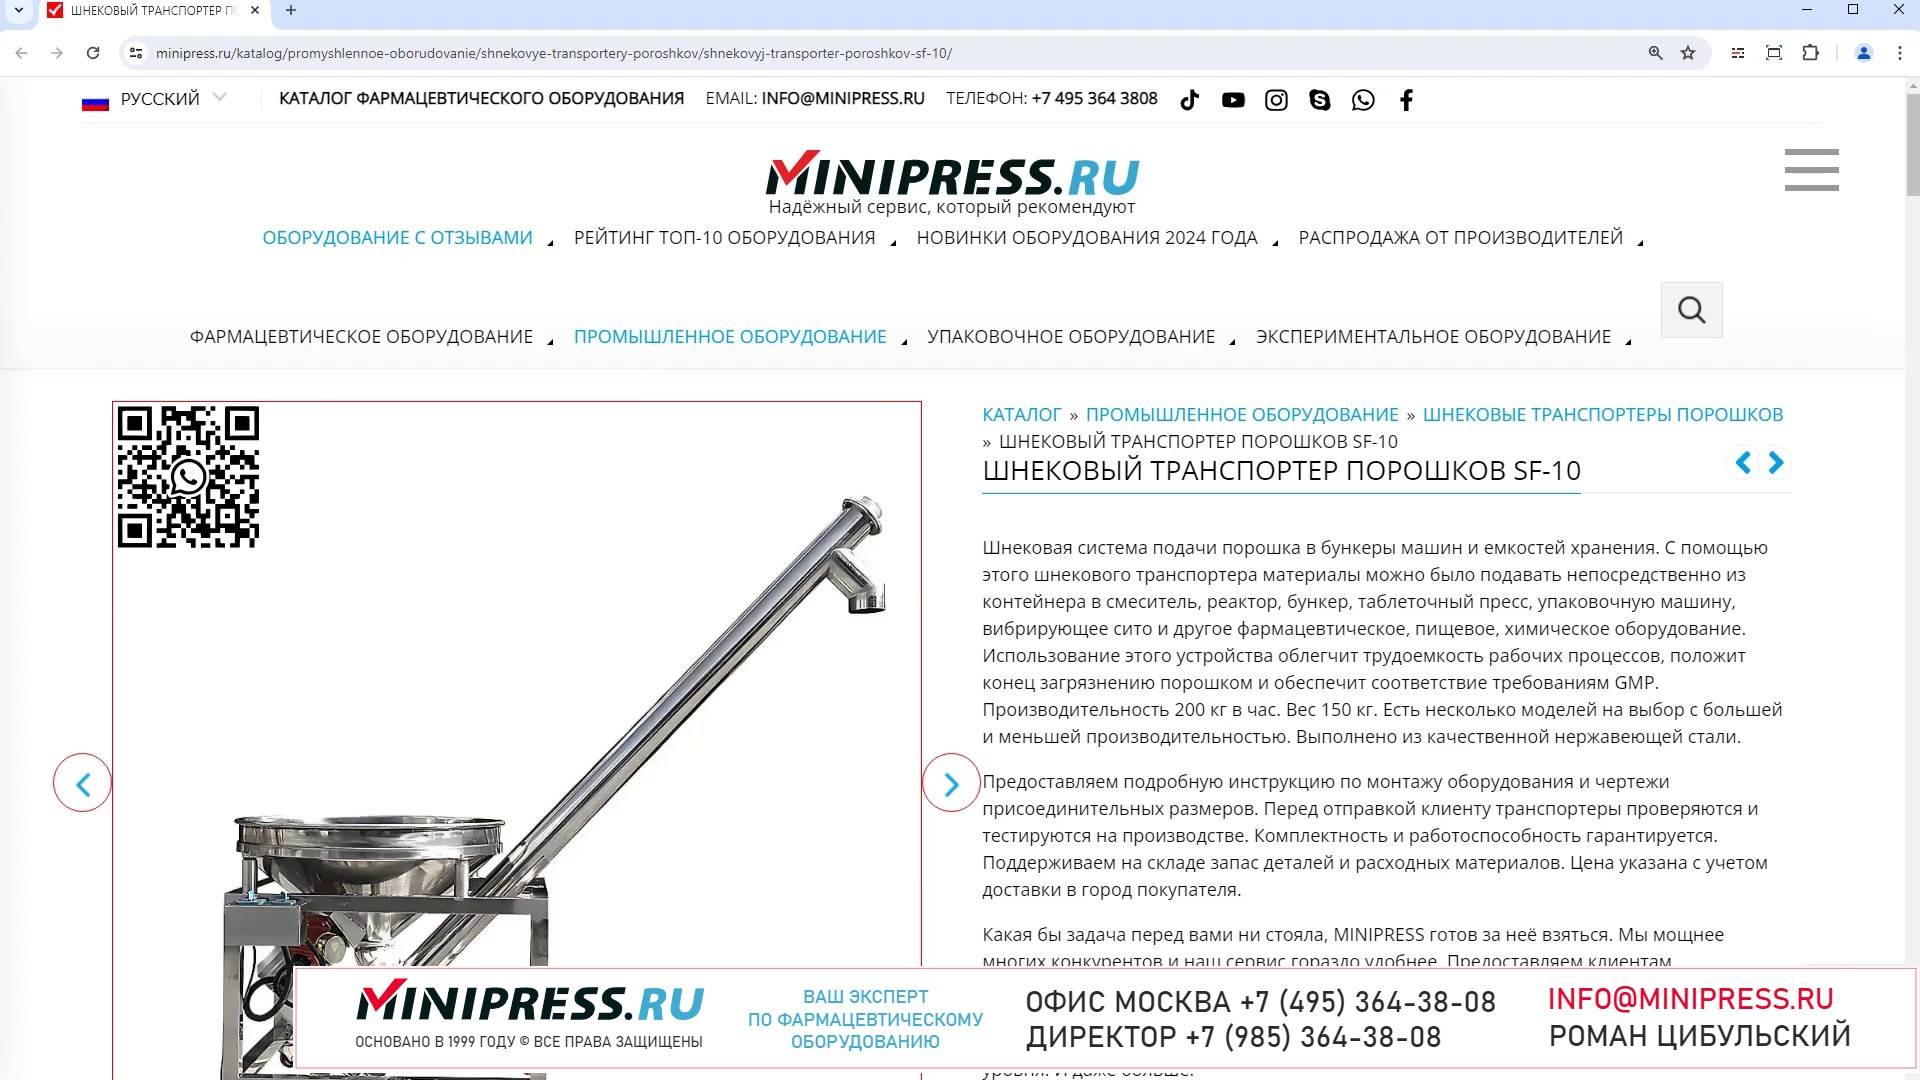 Minipress.ru Шнековый транспортер порошков SF-10